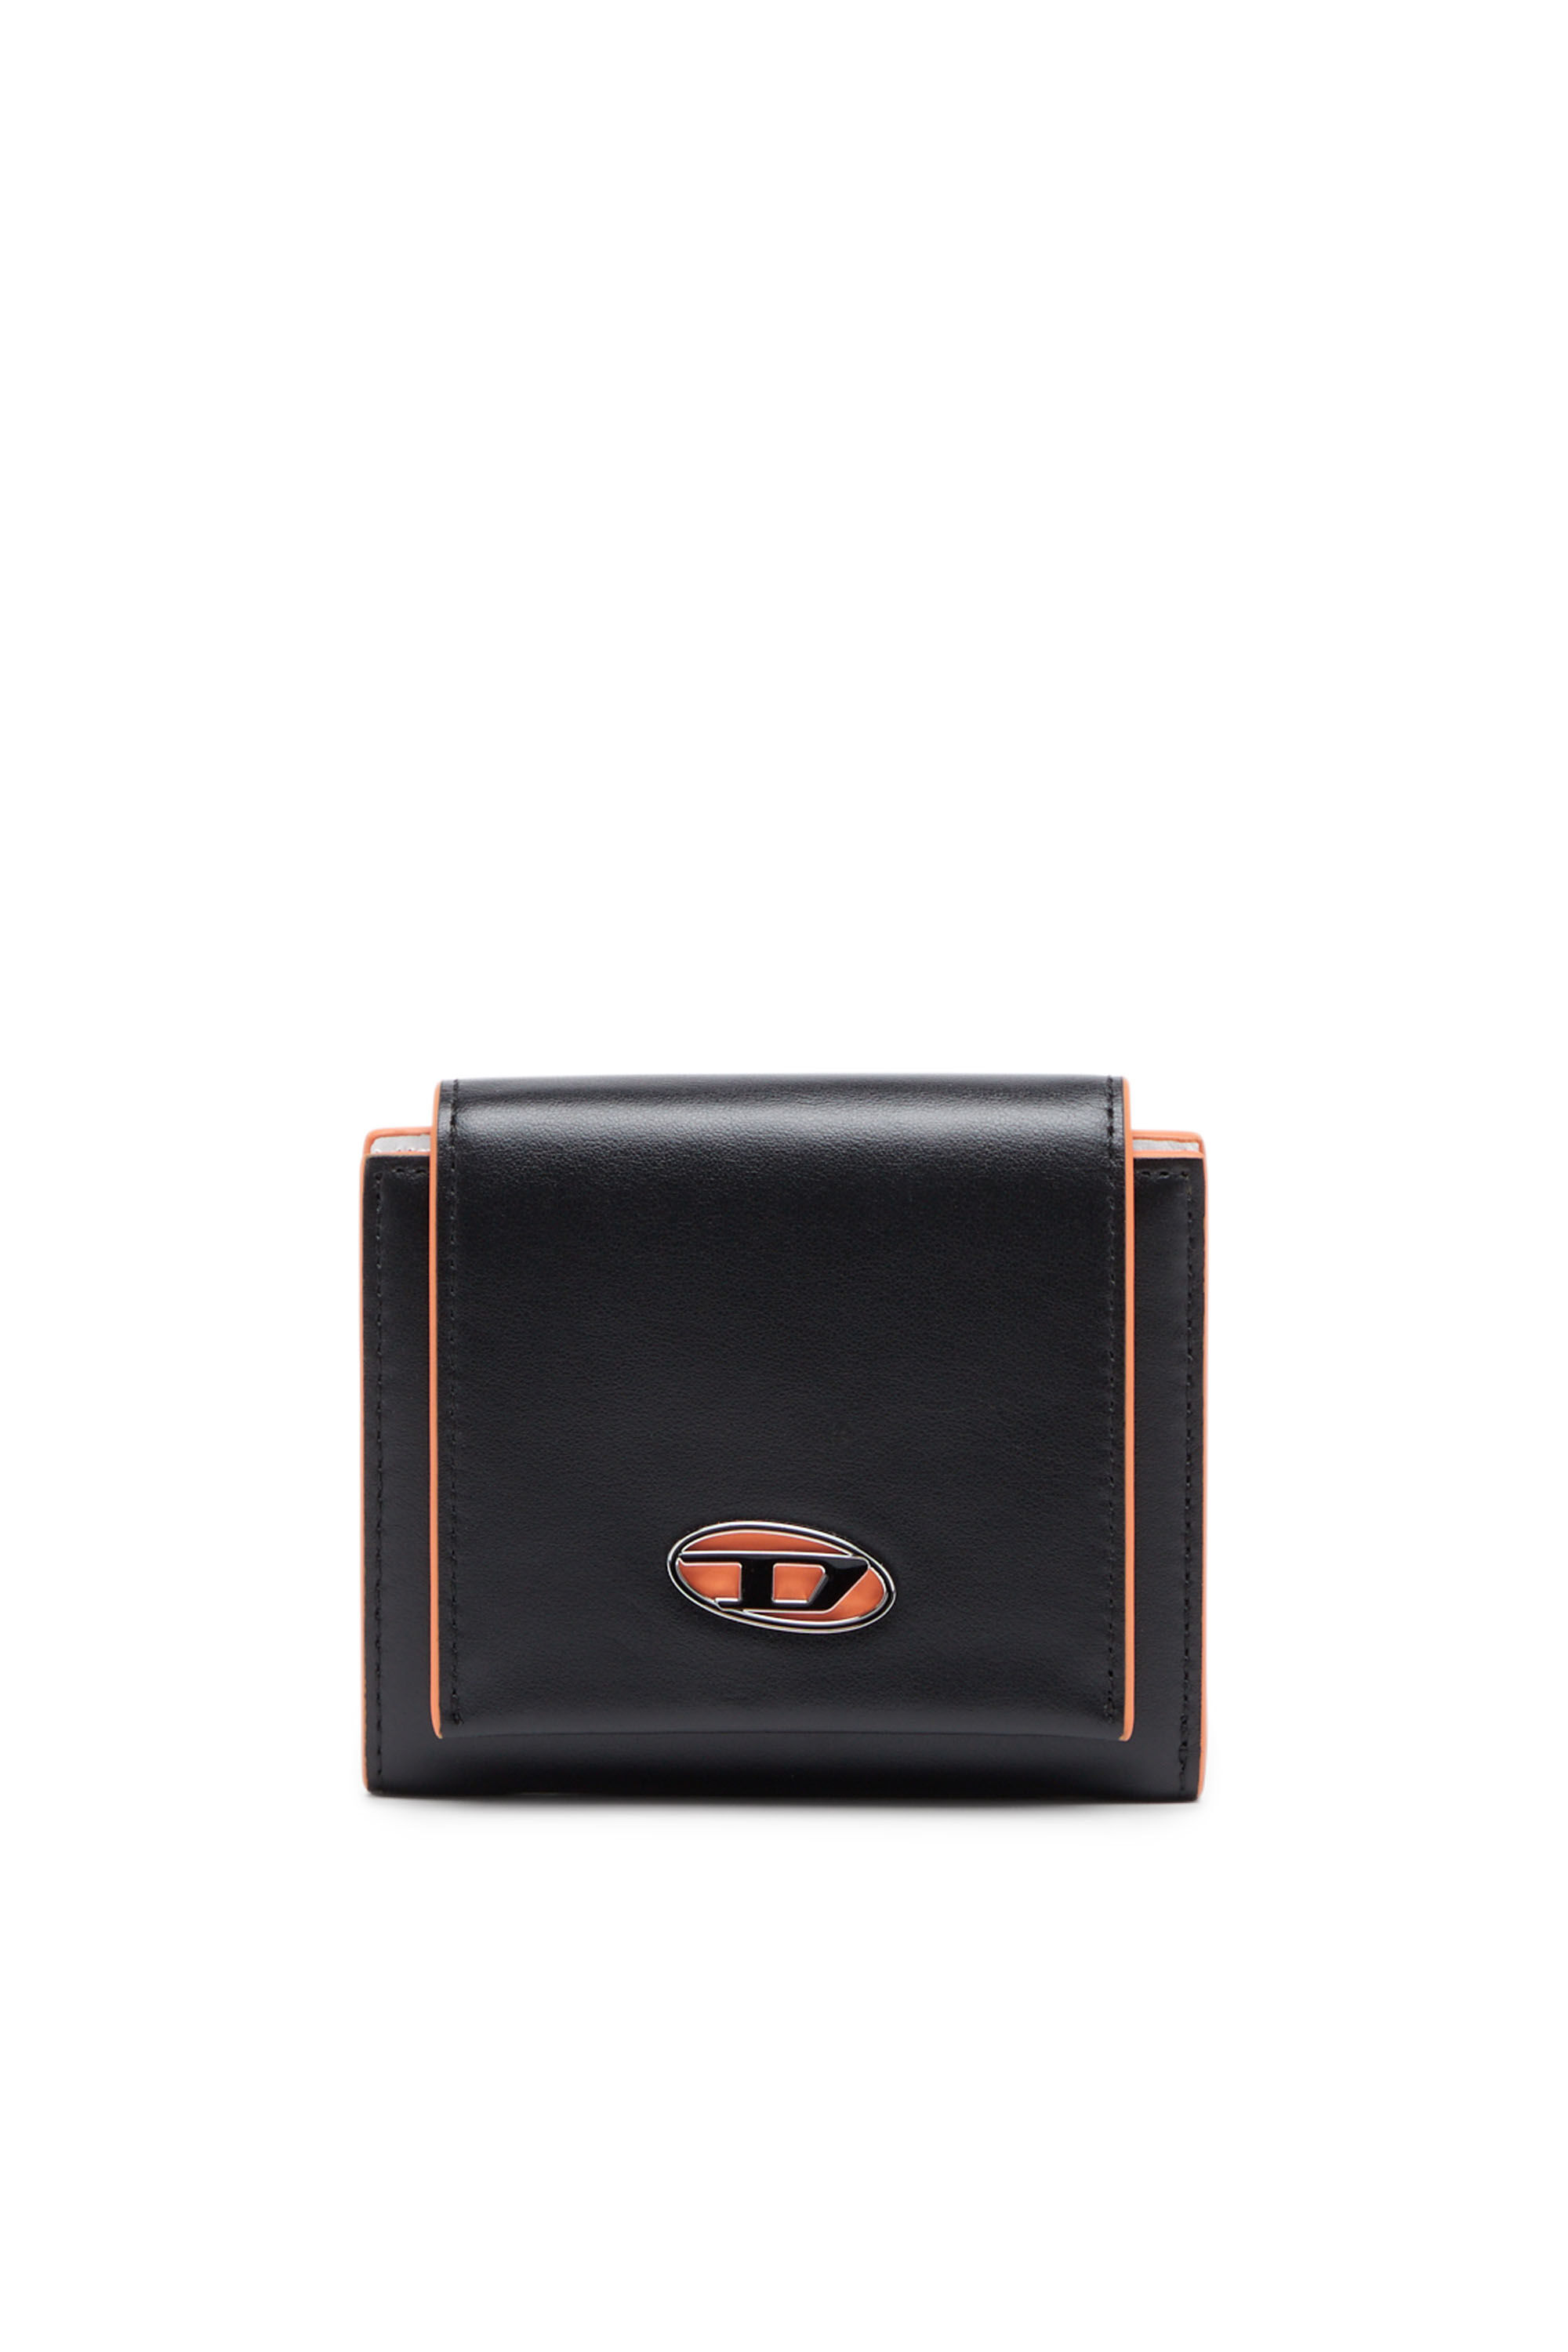 Diesel - BI-FOLD COIN S 3D, Black/Orange - Image 1